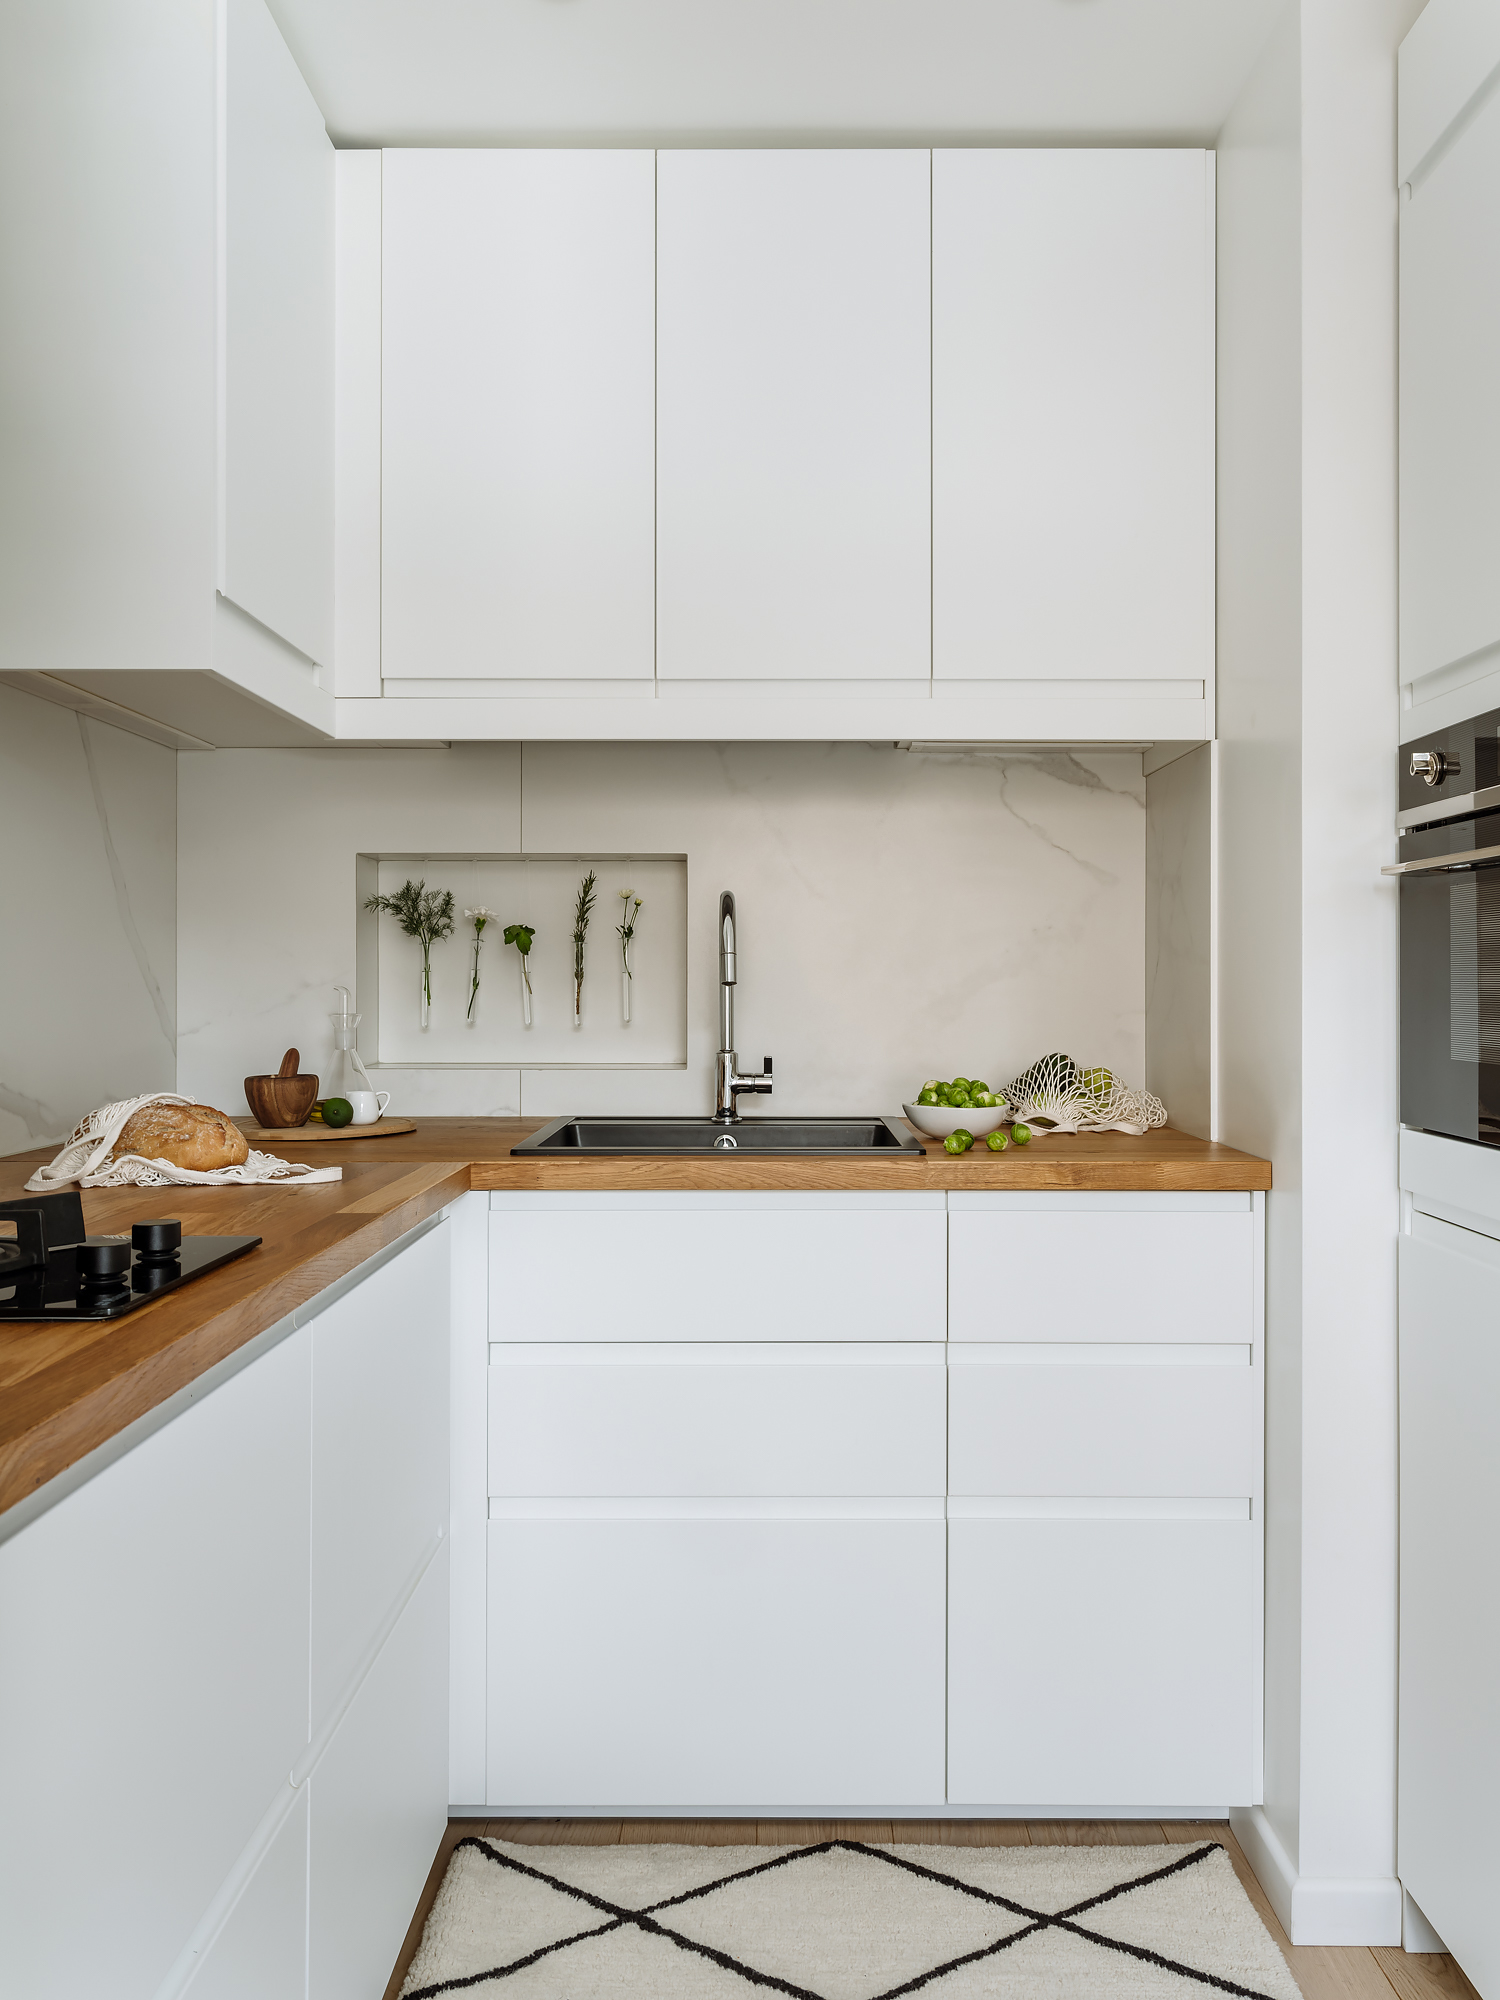 Phòng bếp nhỏ với hệ tủ lưu trữ màu trắng sạch sẽ, tương phản nhẹ nhàng với mặt bàn gỗ ấm áp. Backsplash ốp đá cẩm thạch cho khu vực nấu nướng thêm sang chảnh.